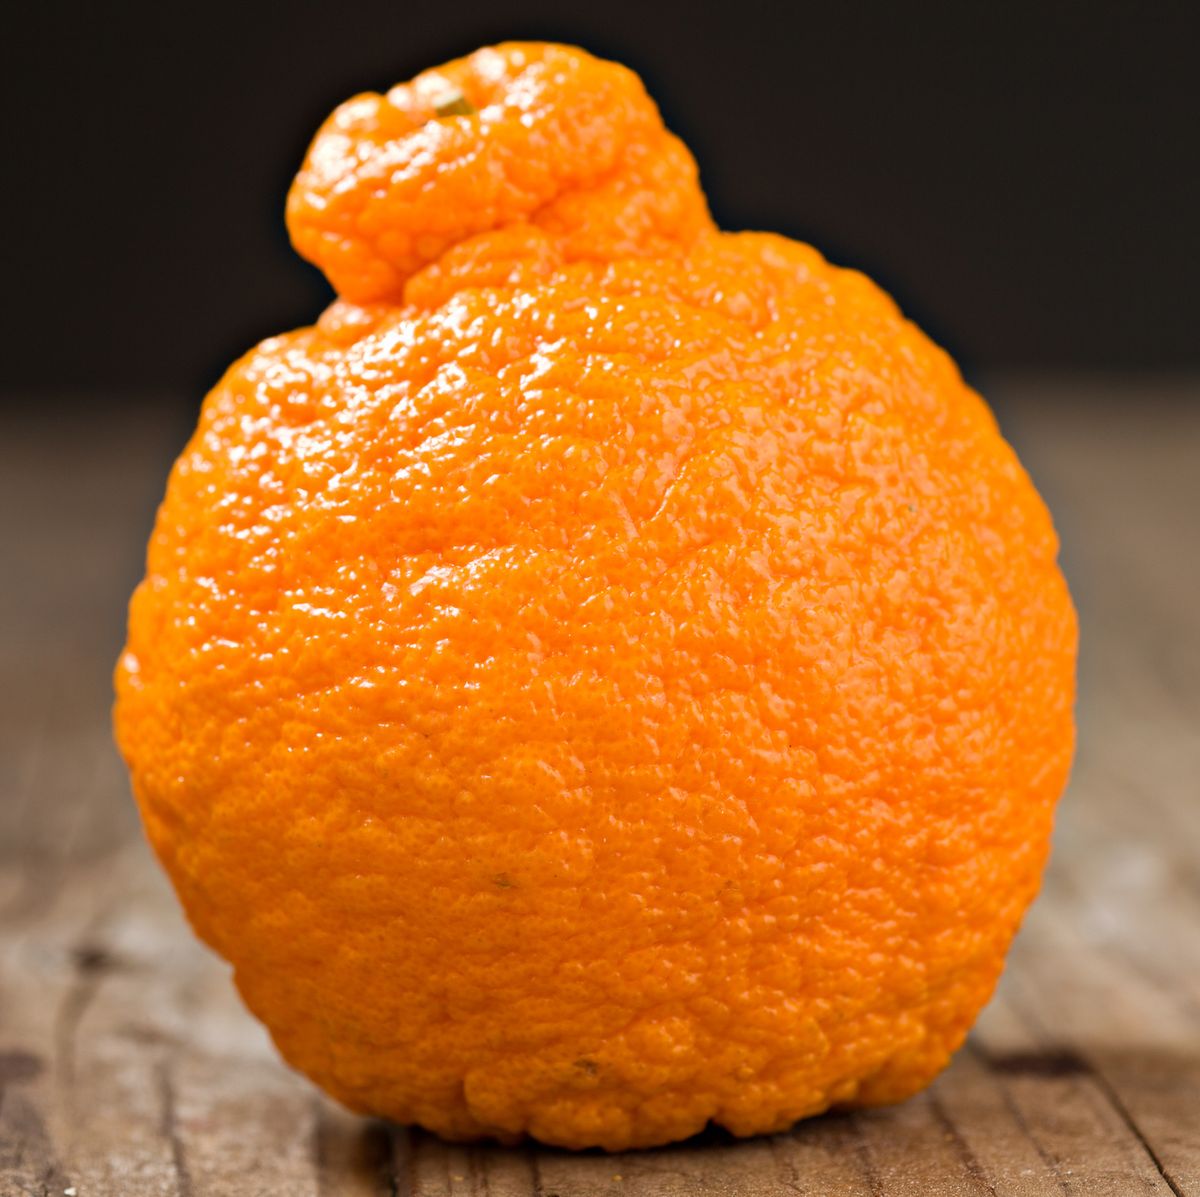 What Are Sumo Oranges? Sumo Orange Season 2020